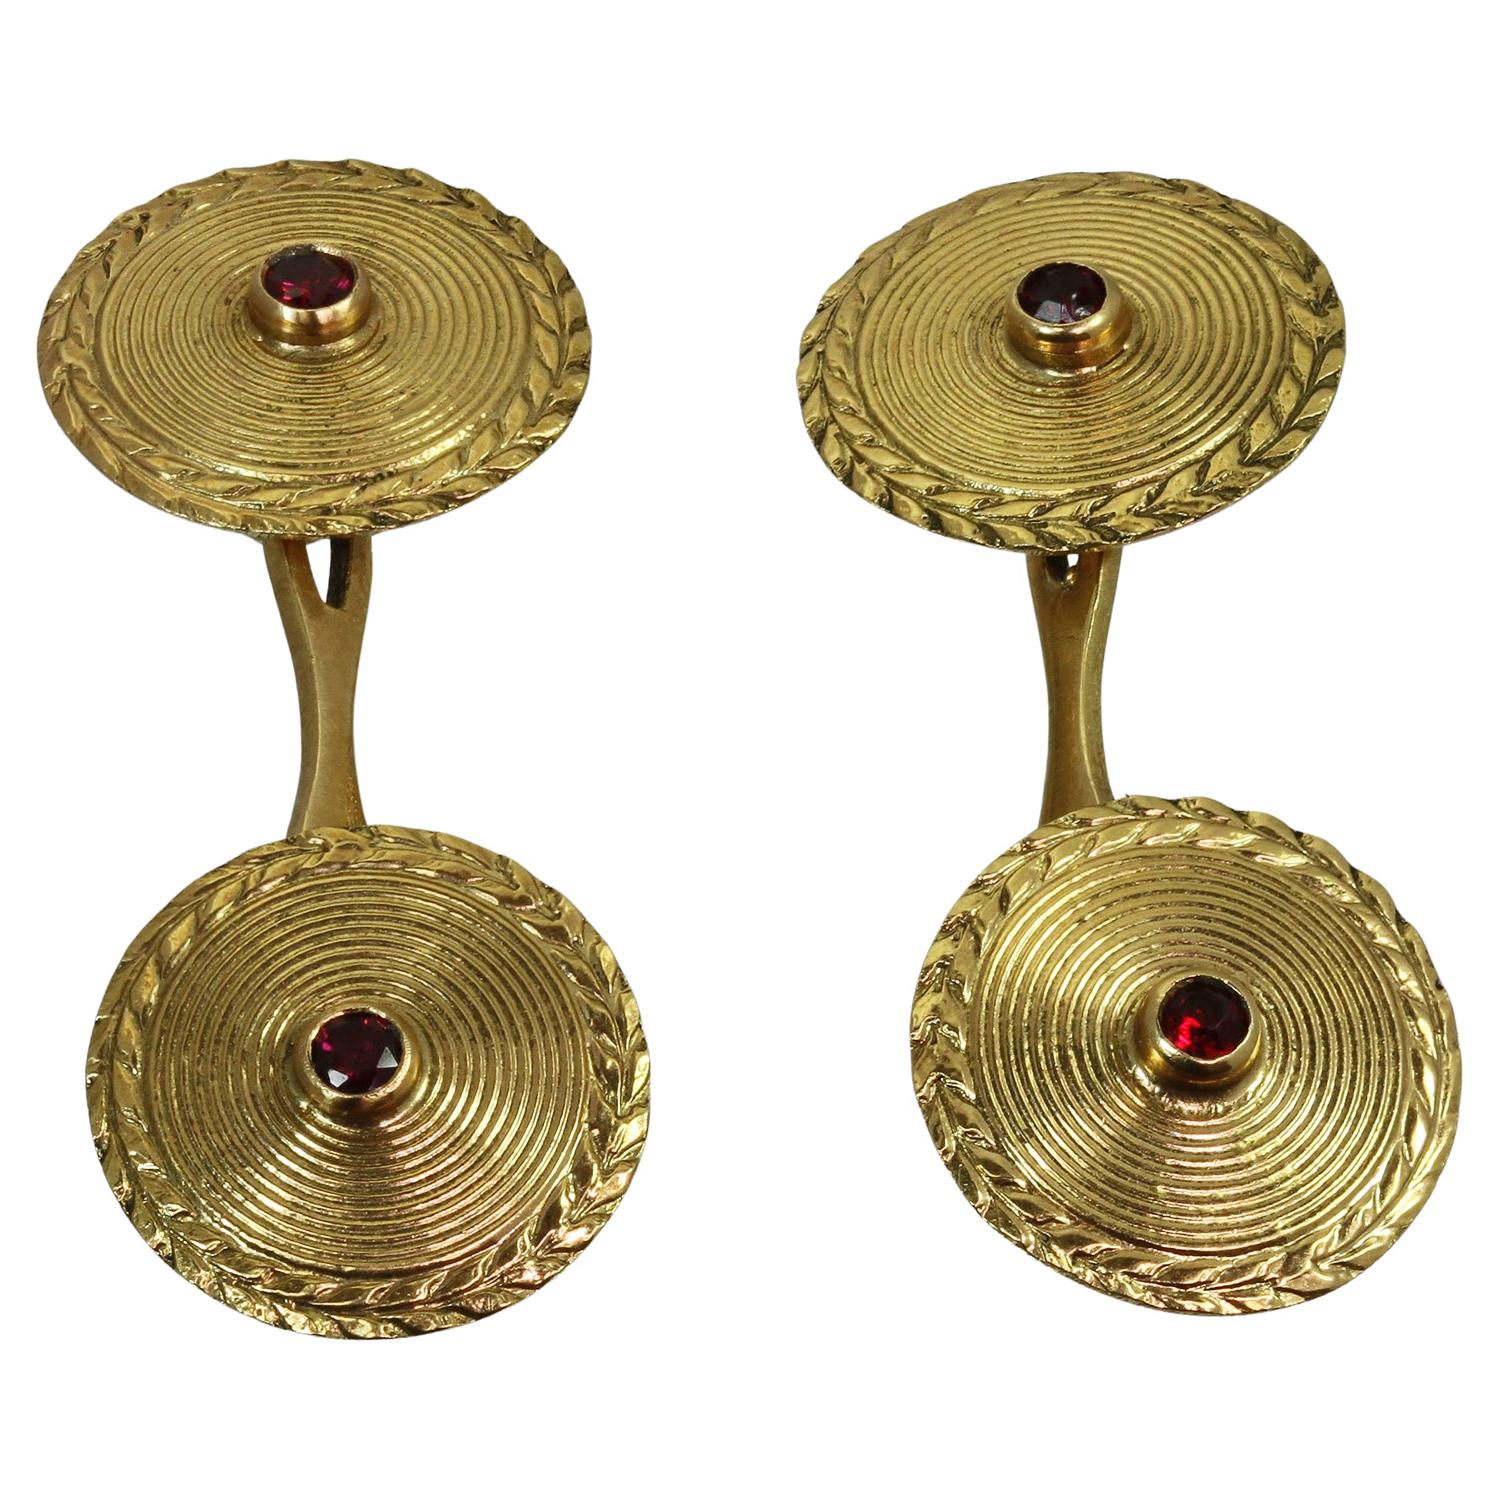 Ces boutons de manchette ronds, rares et anciens, sont ornés d'un motif décoratif double face en or jaune 18 carats, rehaussé de rubis rouges ronds. Fabriqué en France dans les années 1930. Dimensions : 0,55